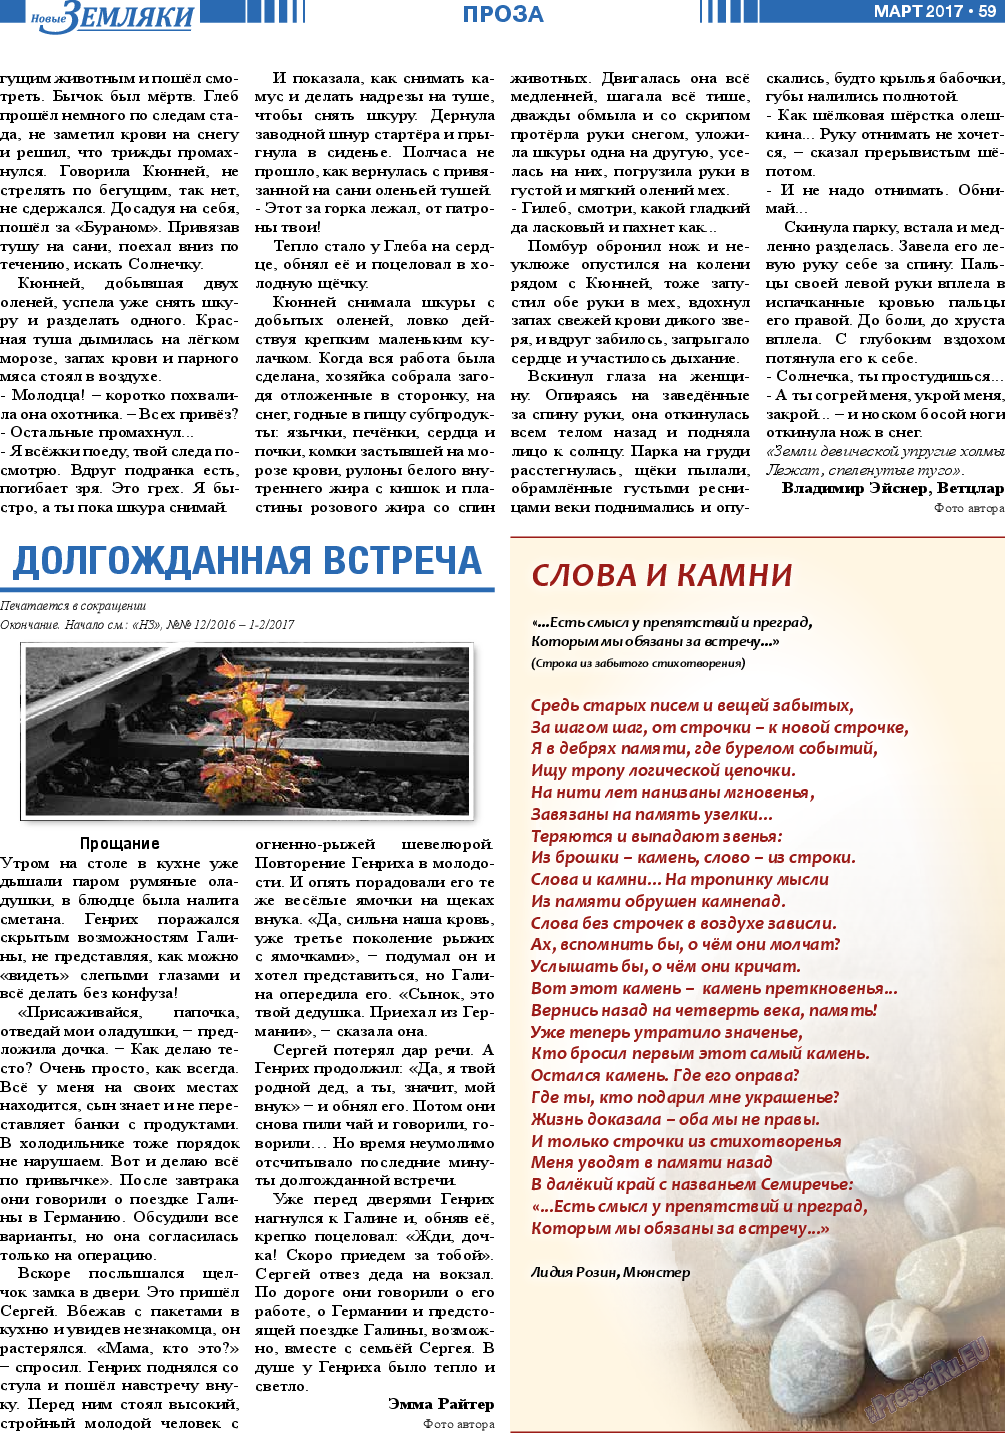 Новые Земляки, газета. 2017 №3 стр.59